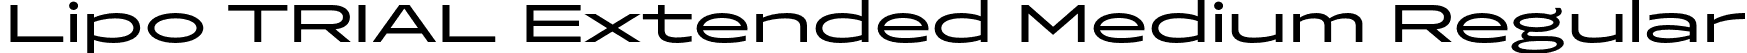 Lipo TRIAL Extended Medium Regular font | LipoTRIAL-ExtendedMedium.otf